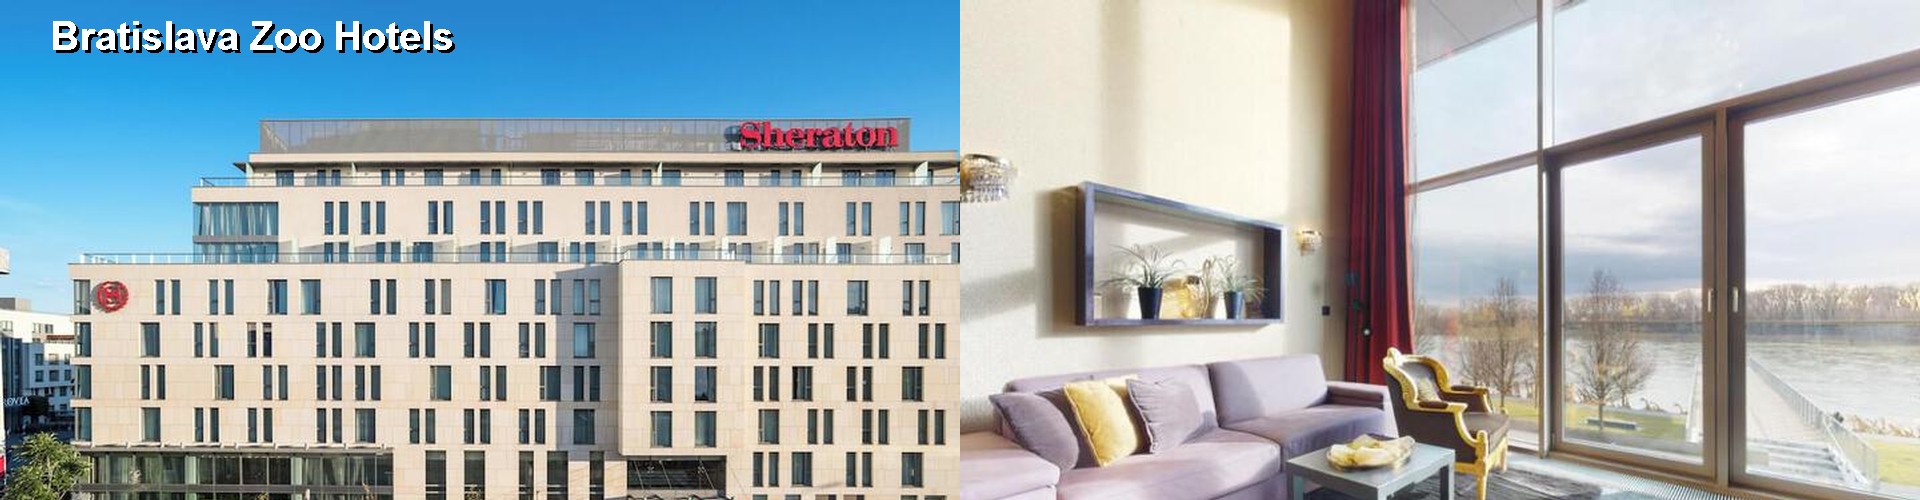 5 Best Hotels near Bratislava Zoo